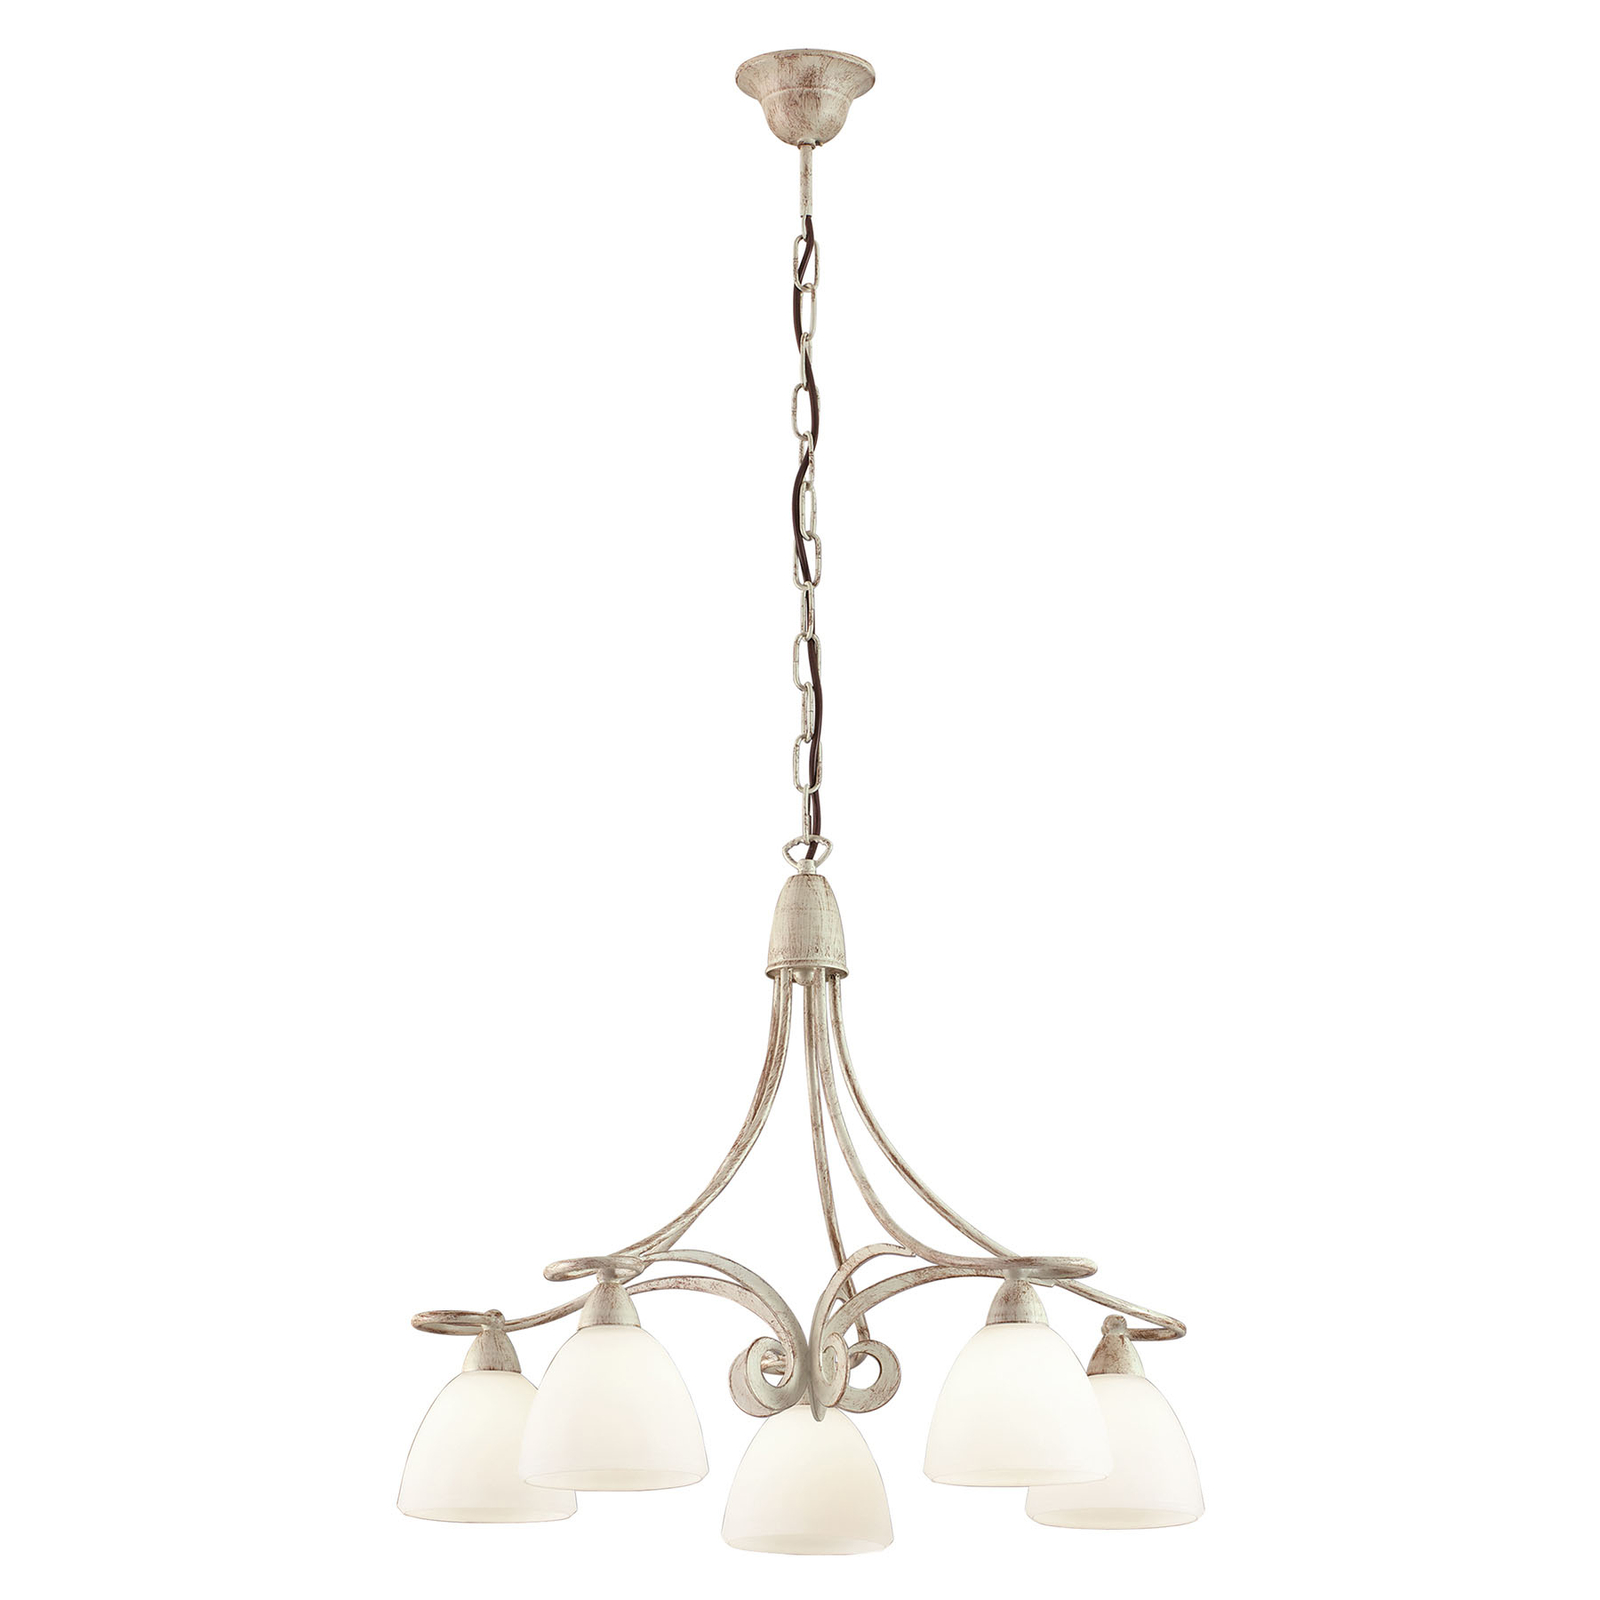 Kroonluchter 1730/5 5-lamps, ivoor